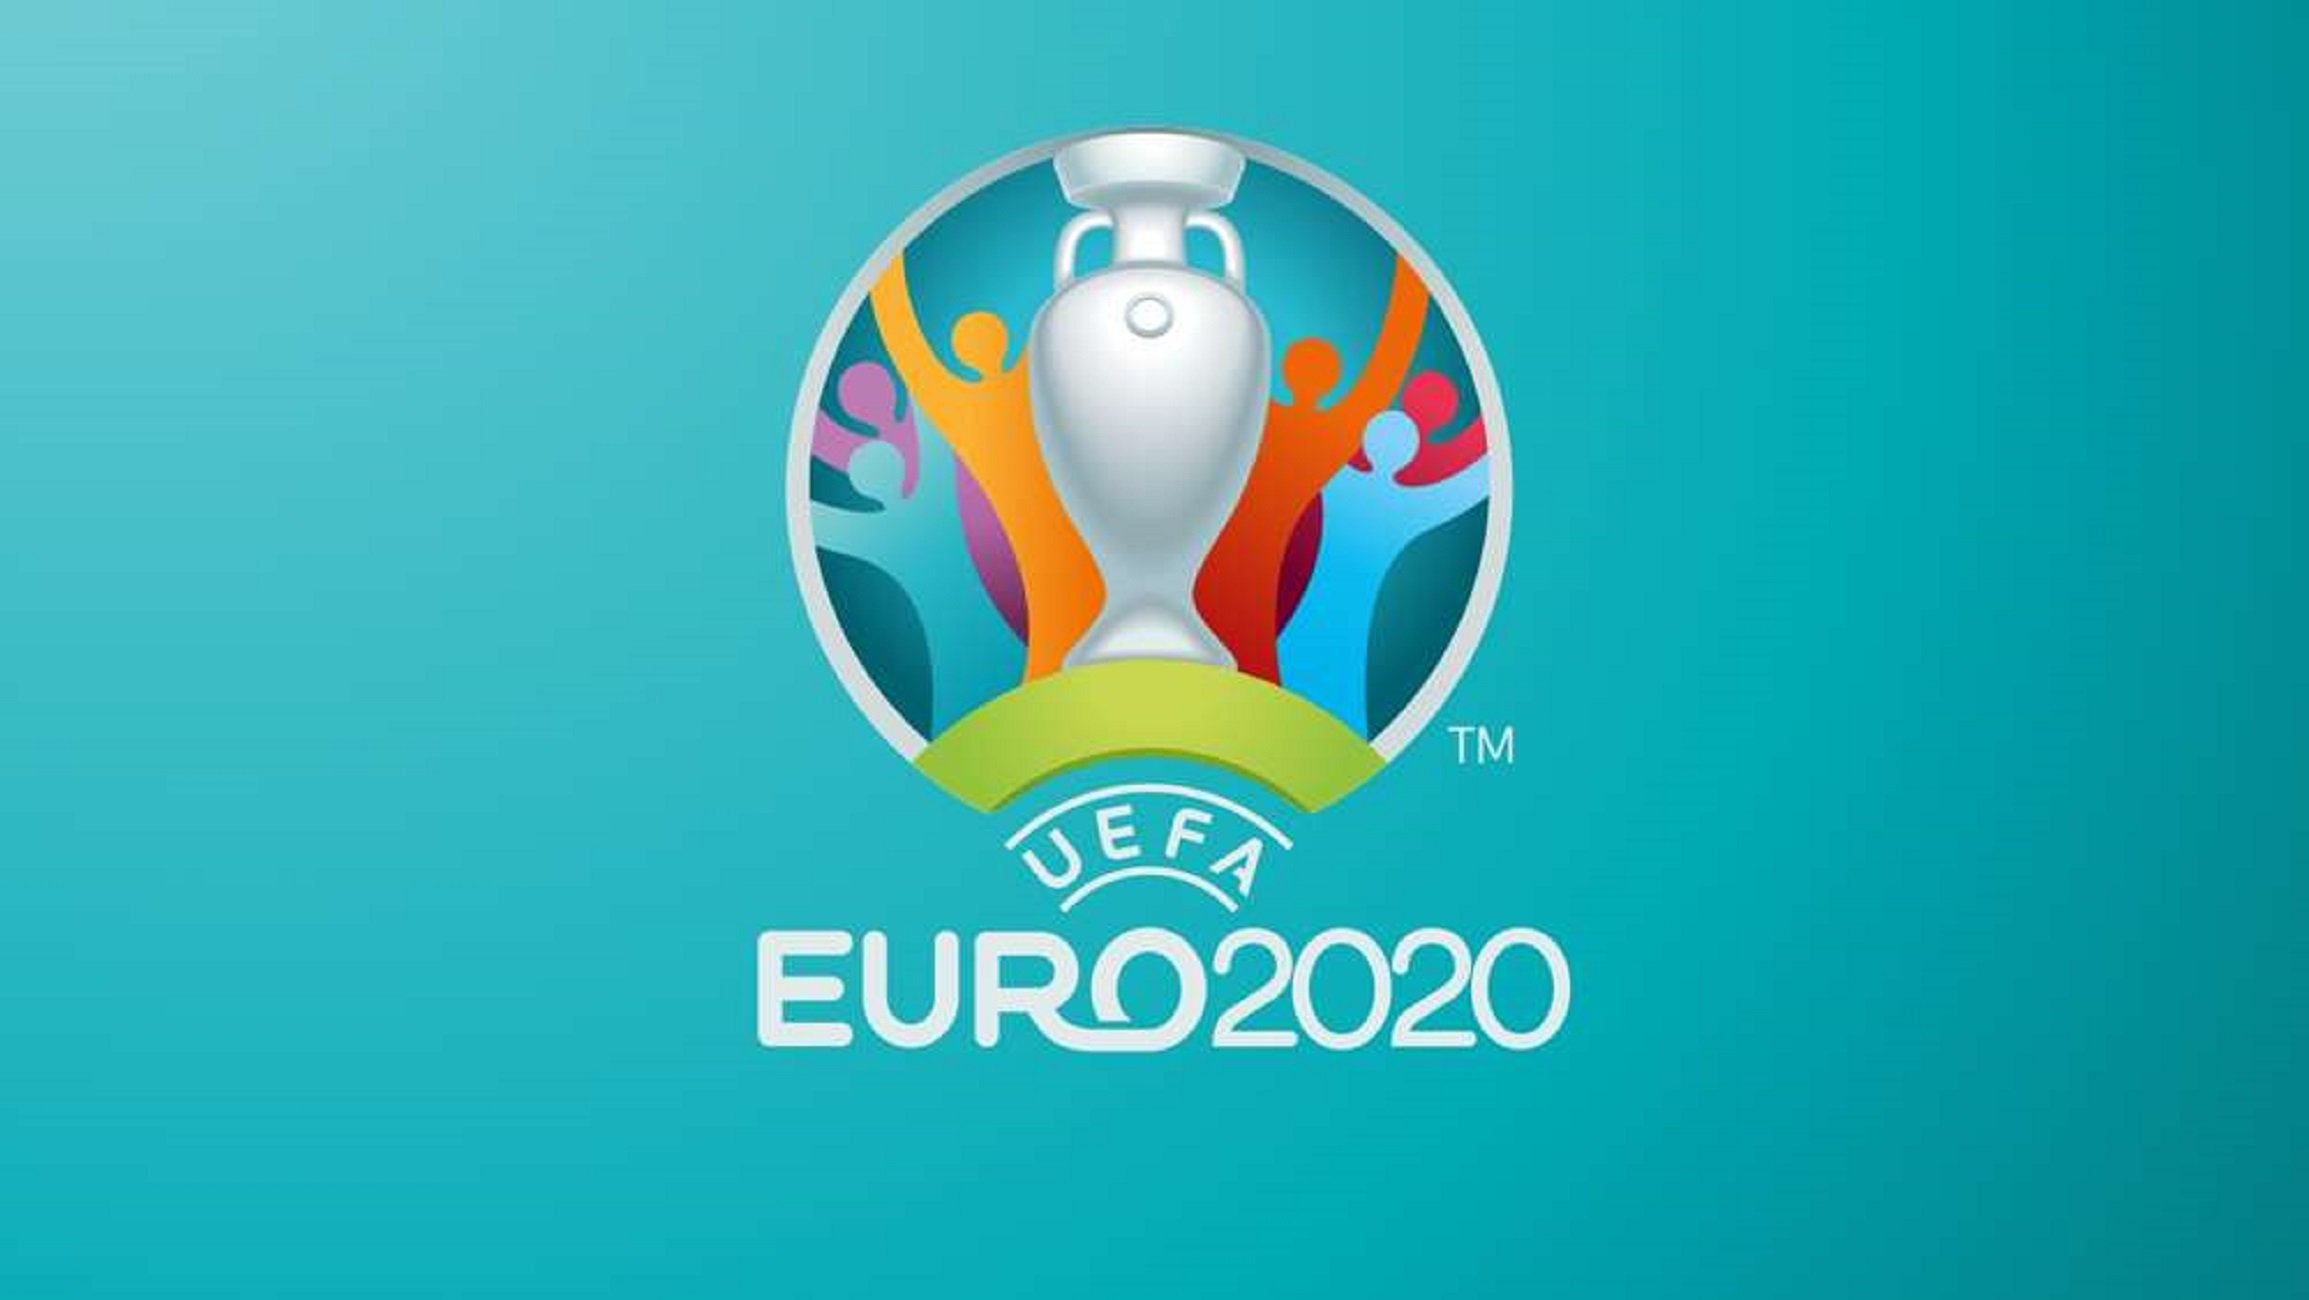 Arranca la Eurocopa 2020, la fiesta del fútbol más atípica que se recuerda